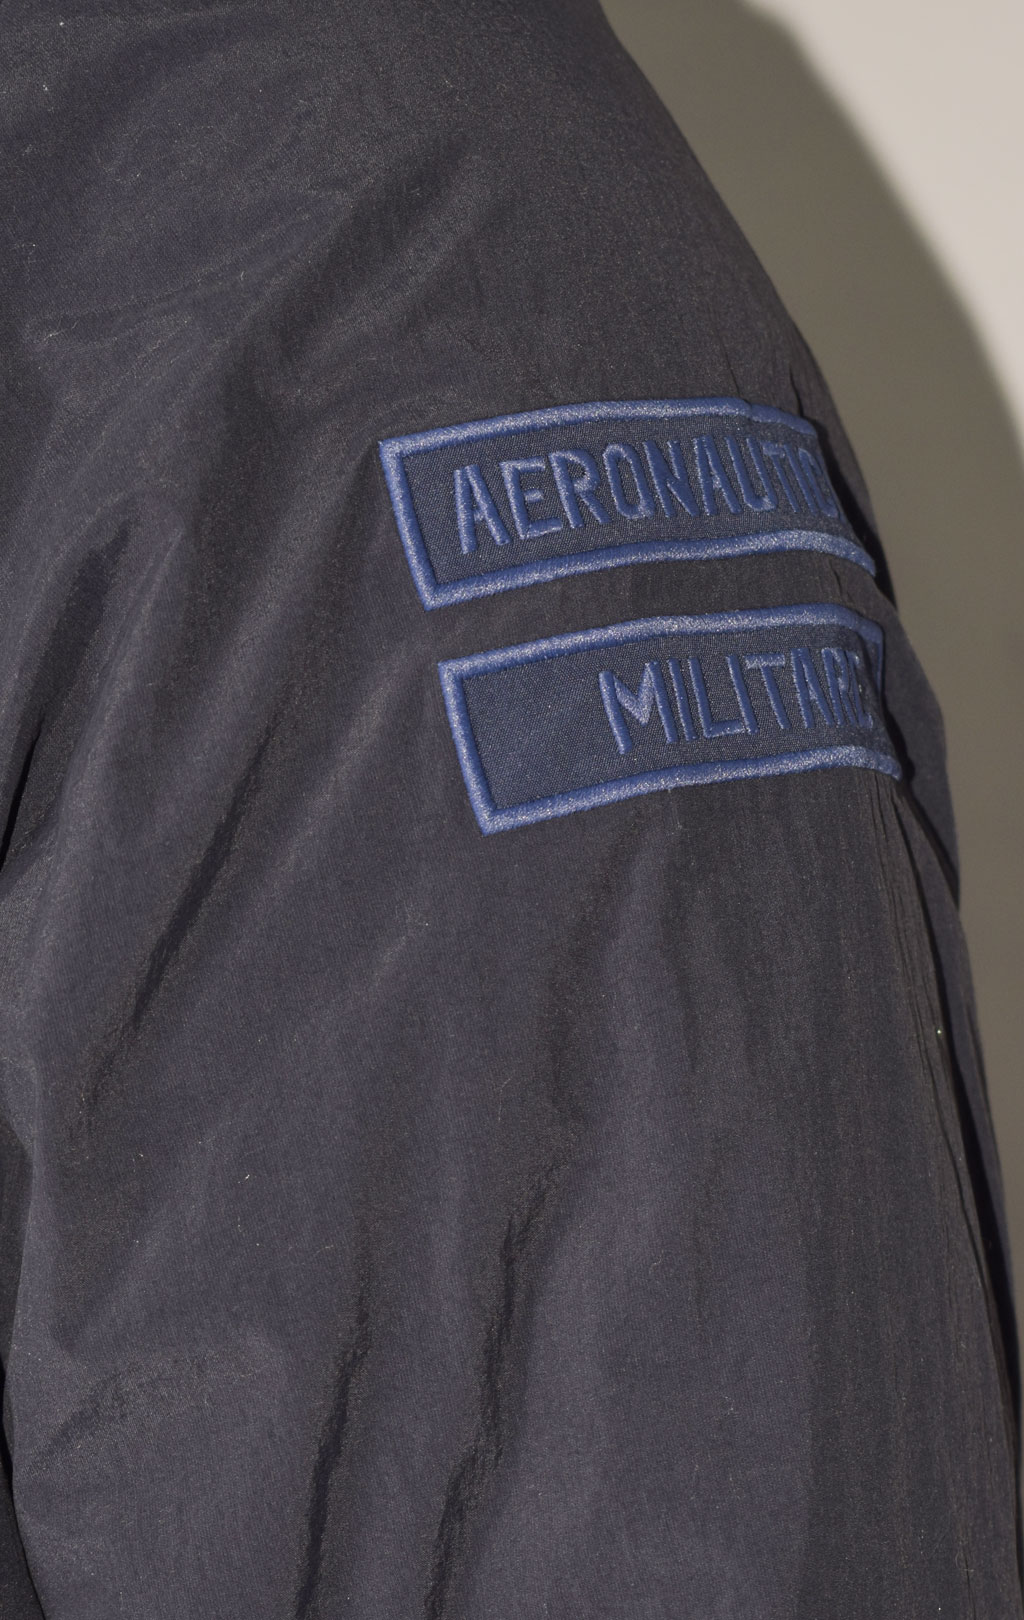 Куртка с капюшоном AERONAUTICA MILITARE FW 23/24 m/CN dark blue (AB 2093) 